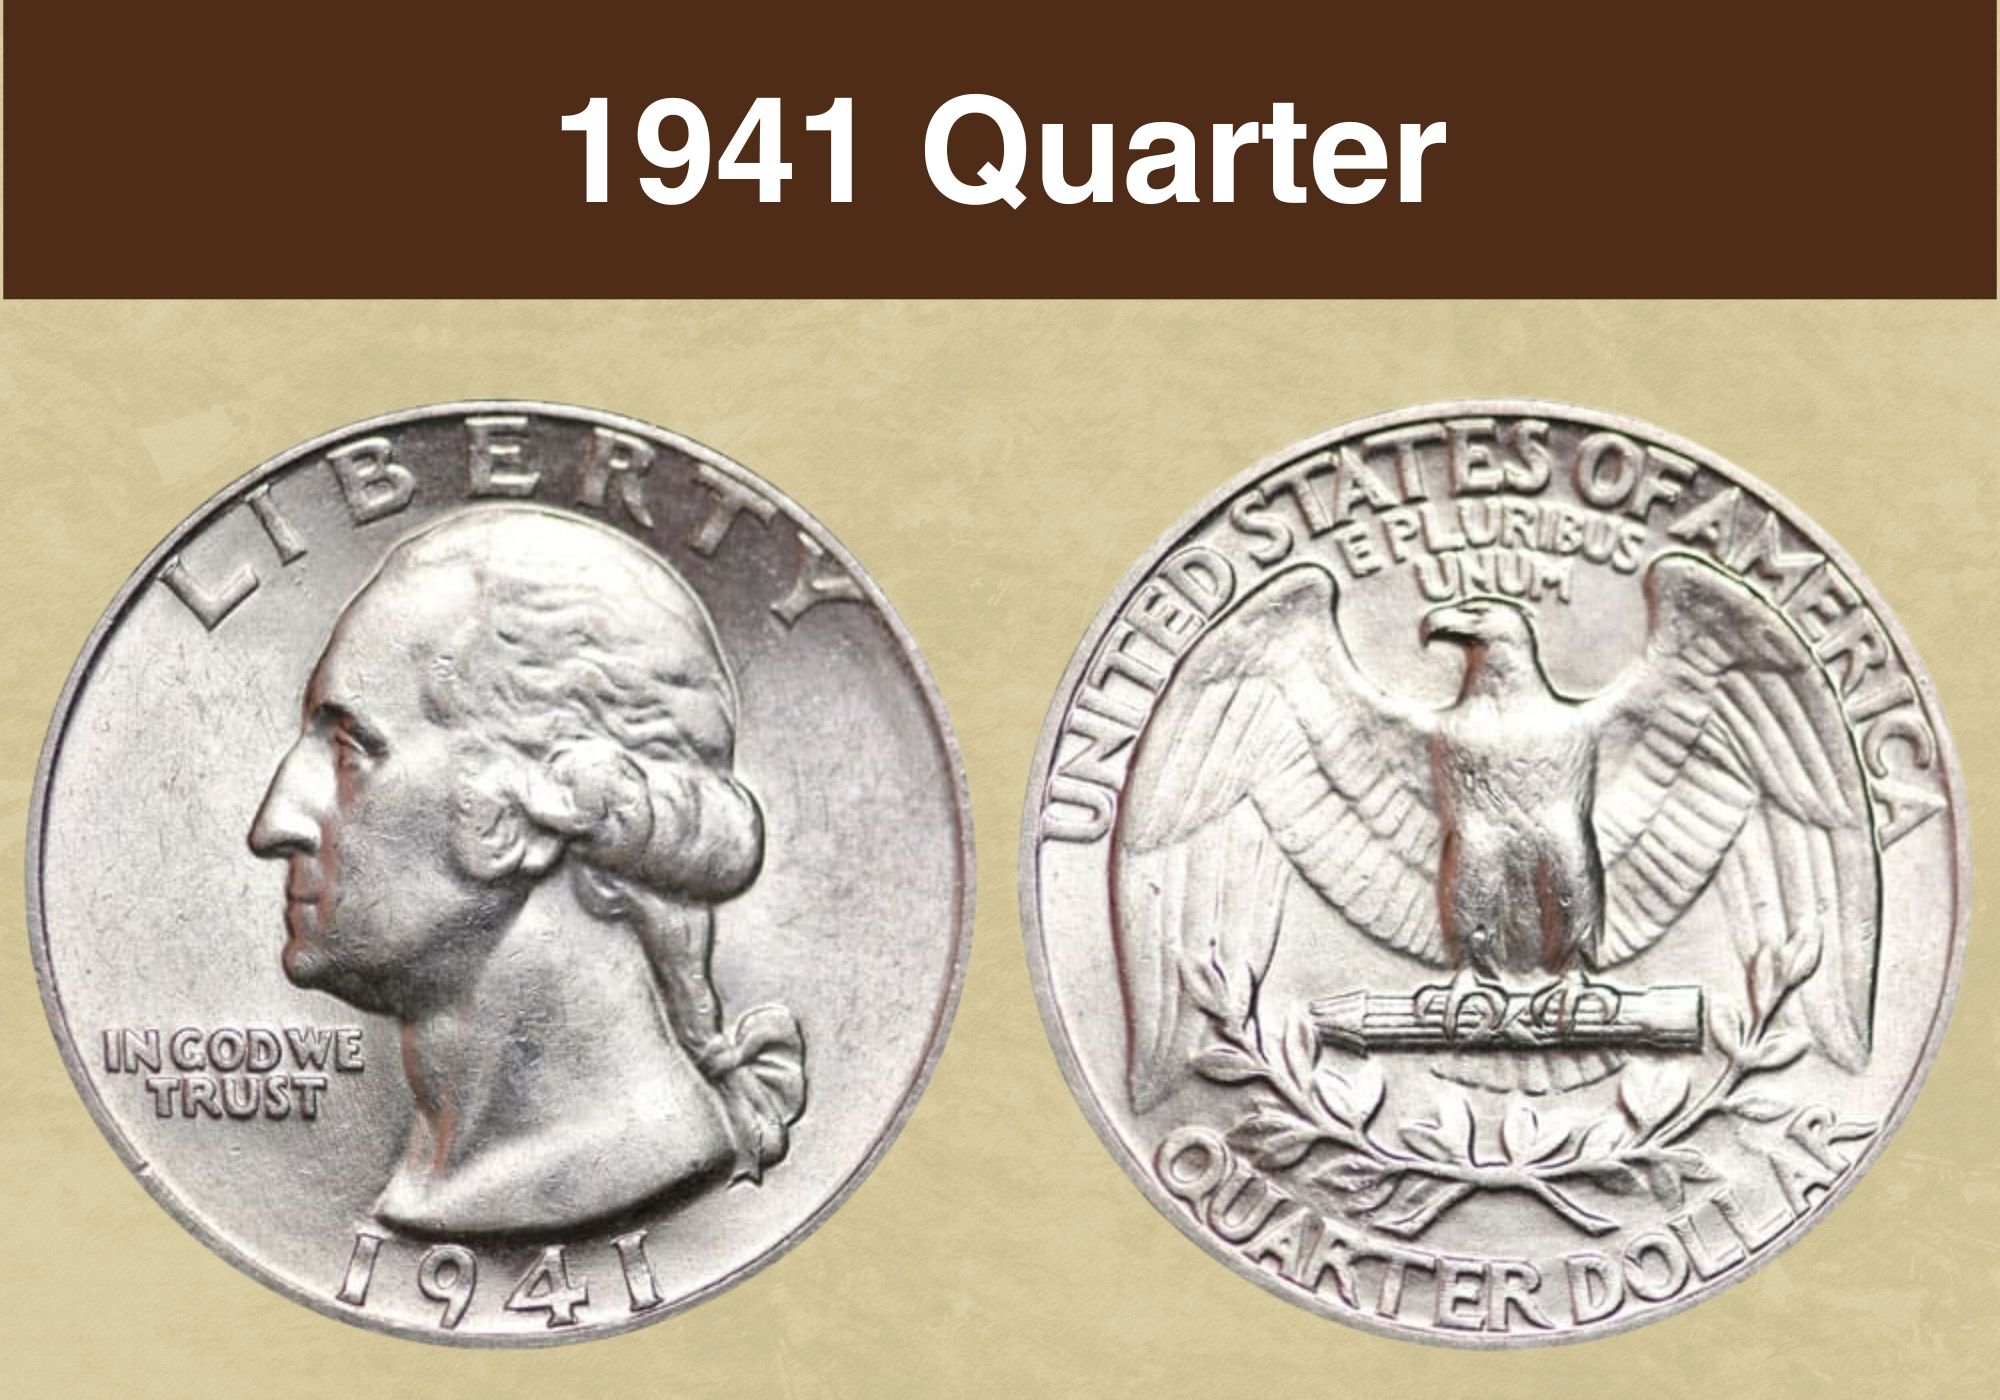 1941 Quarter Value